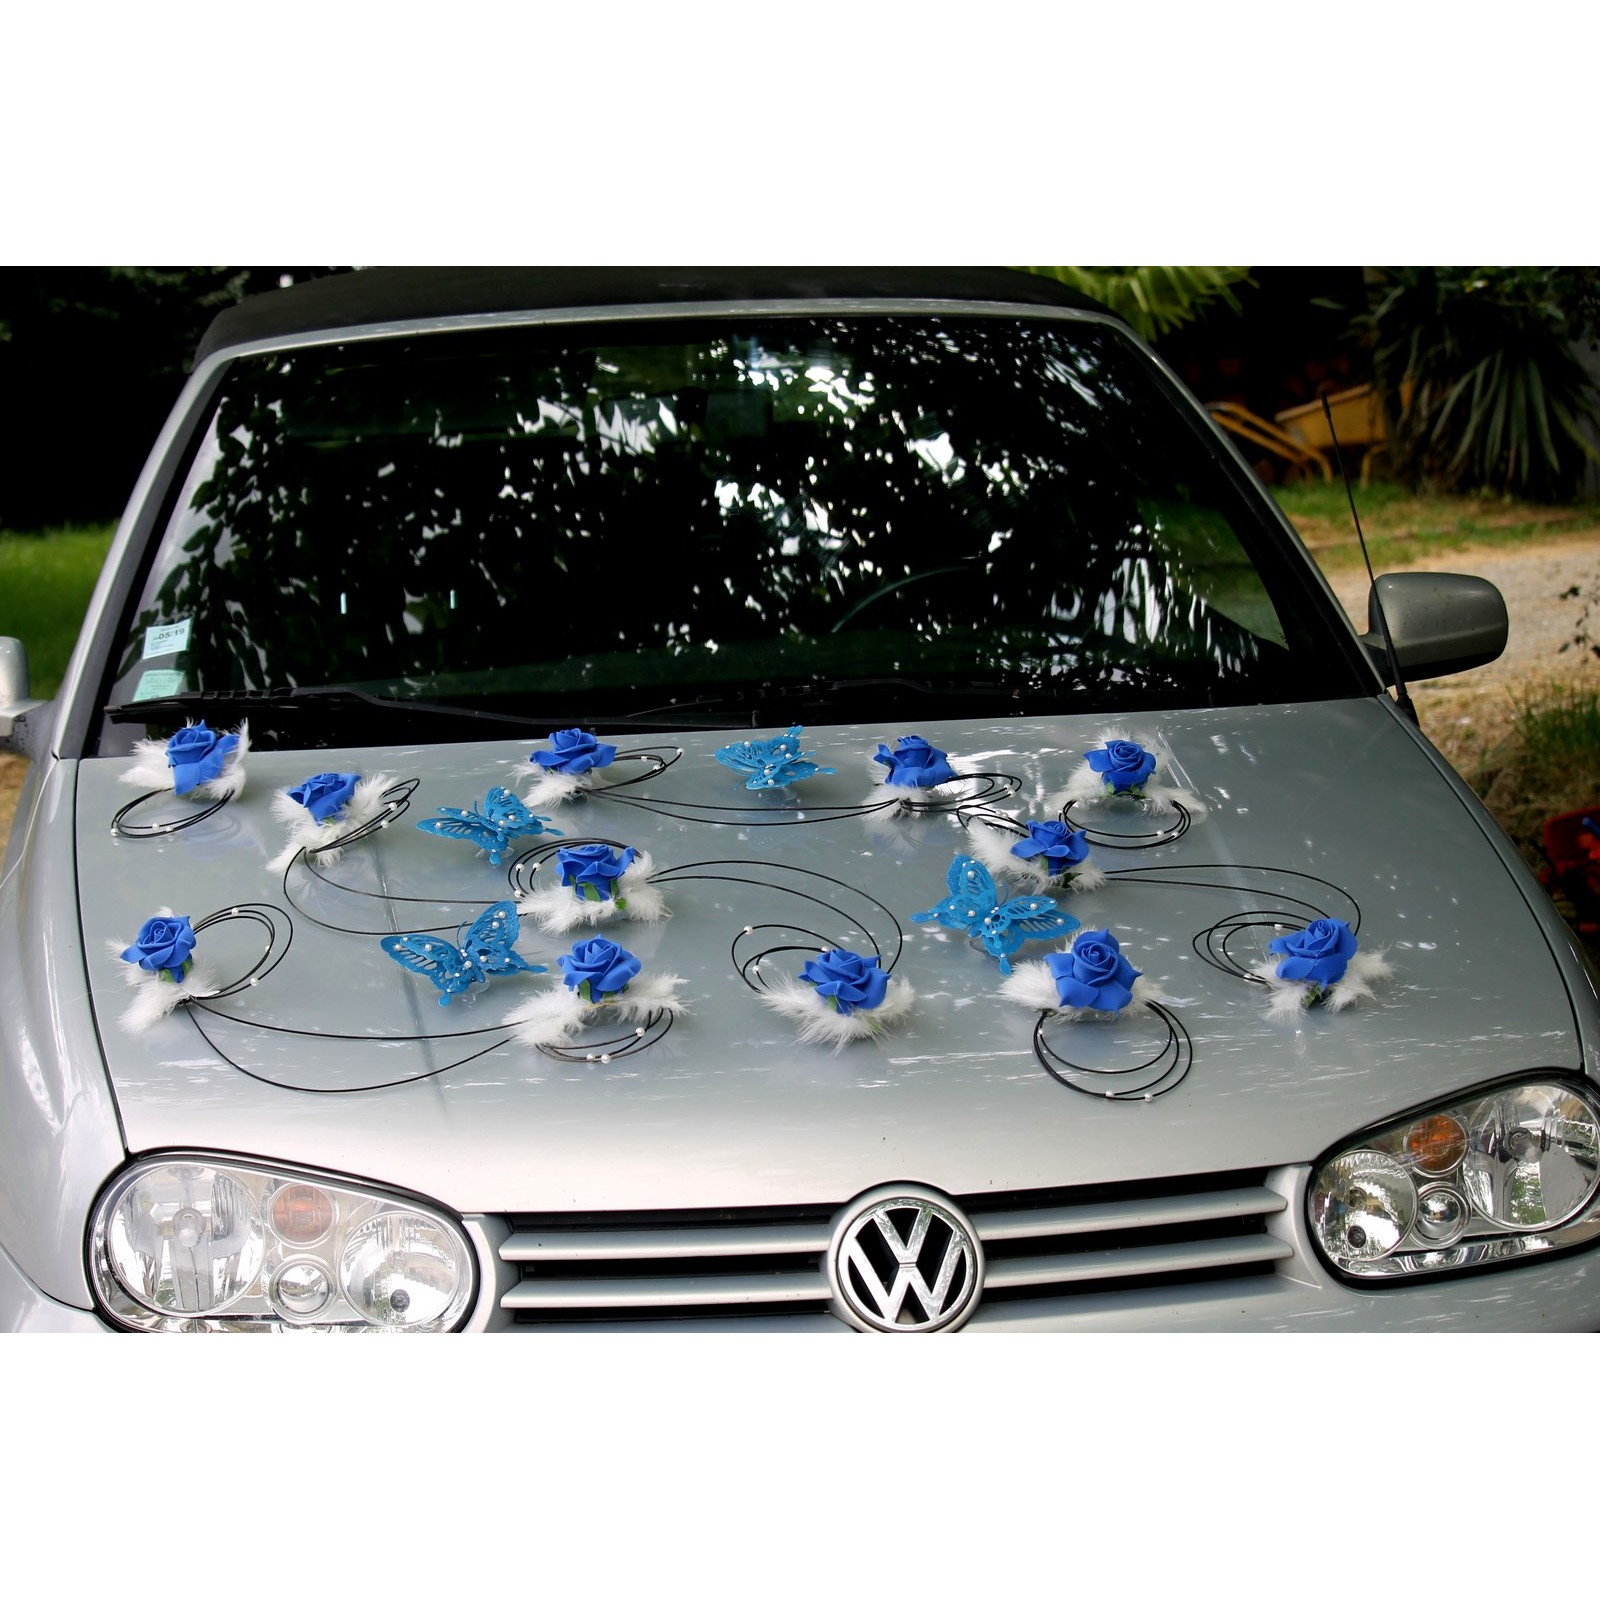 Décoration voiture mariés mariage bleu royal noir papillon